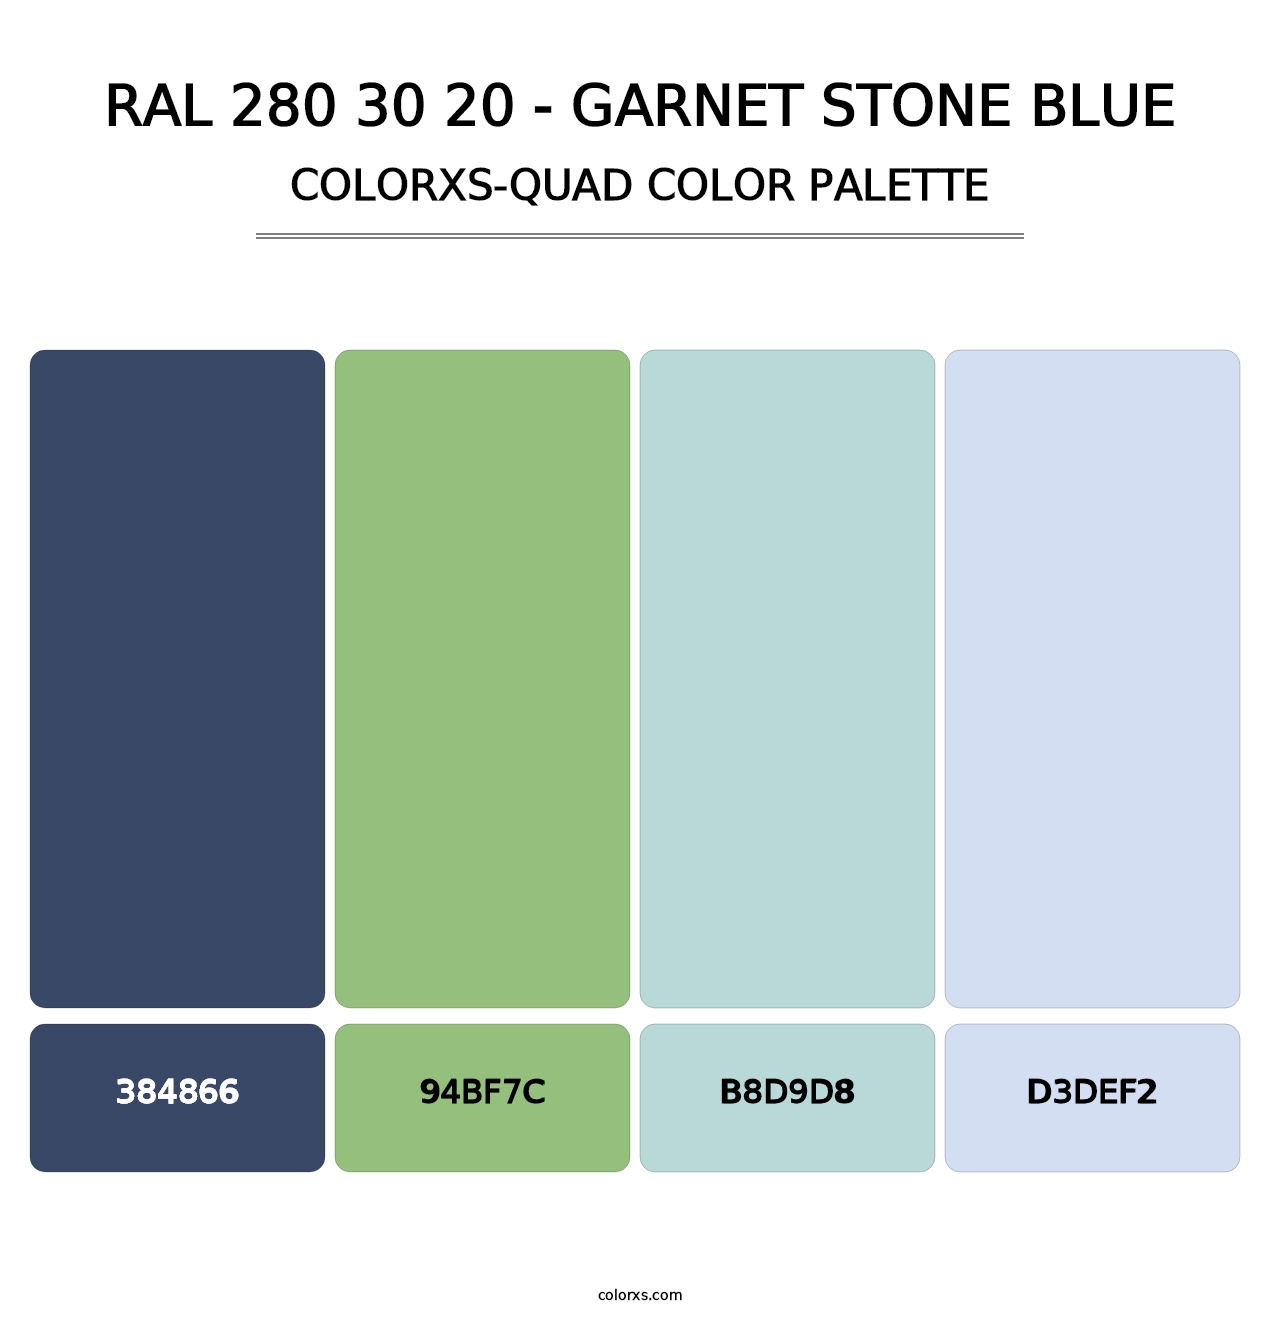 RAL 280 30 20 - Garnet Stone Blue - Colorxs Quad Palette